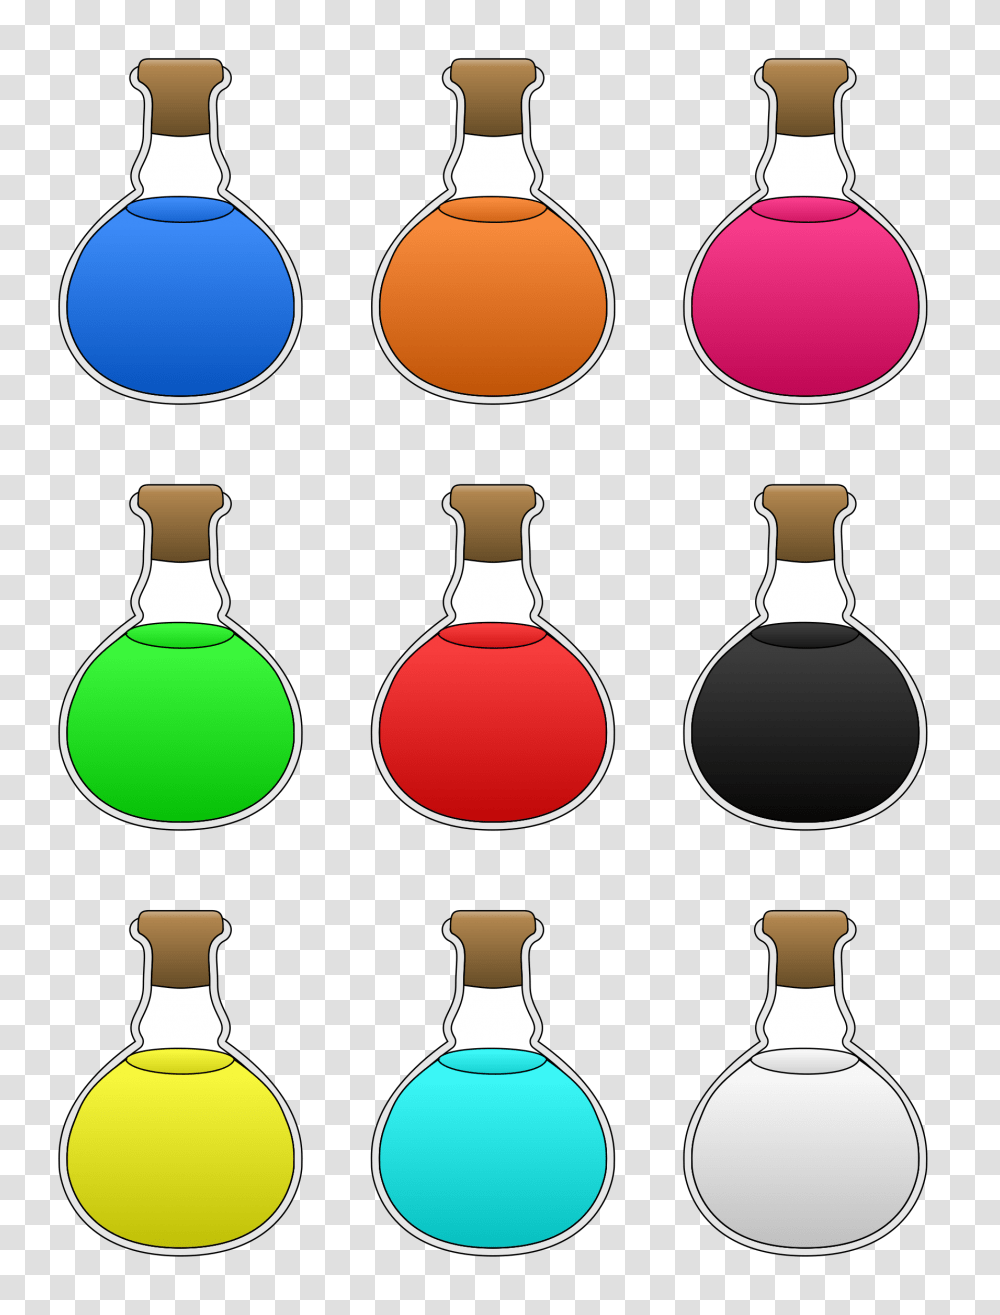 Potions Icons, Bottle, Glass, Jar, Vase Transparent Png